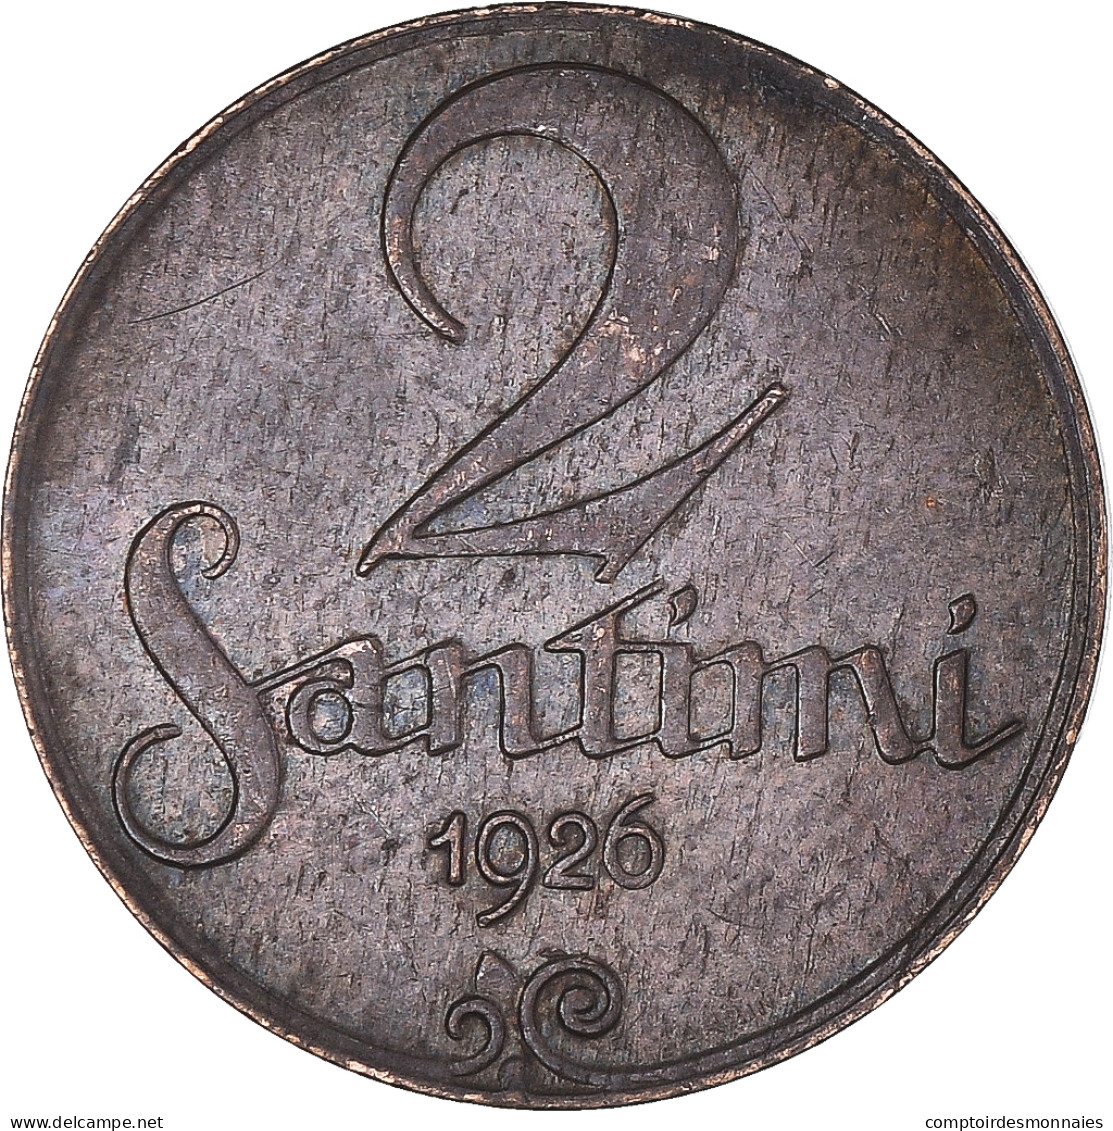 Monnaie, Lettonie, 2 Santimi, 1926 - Estonia